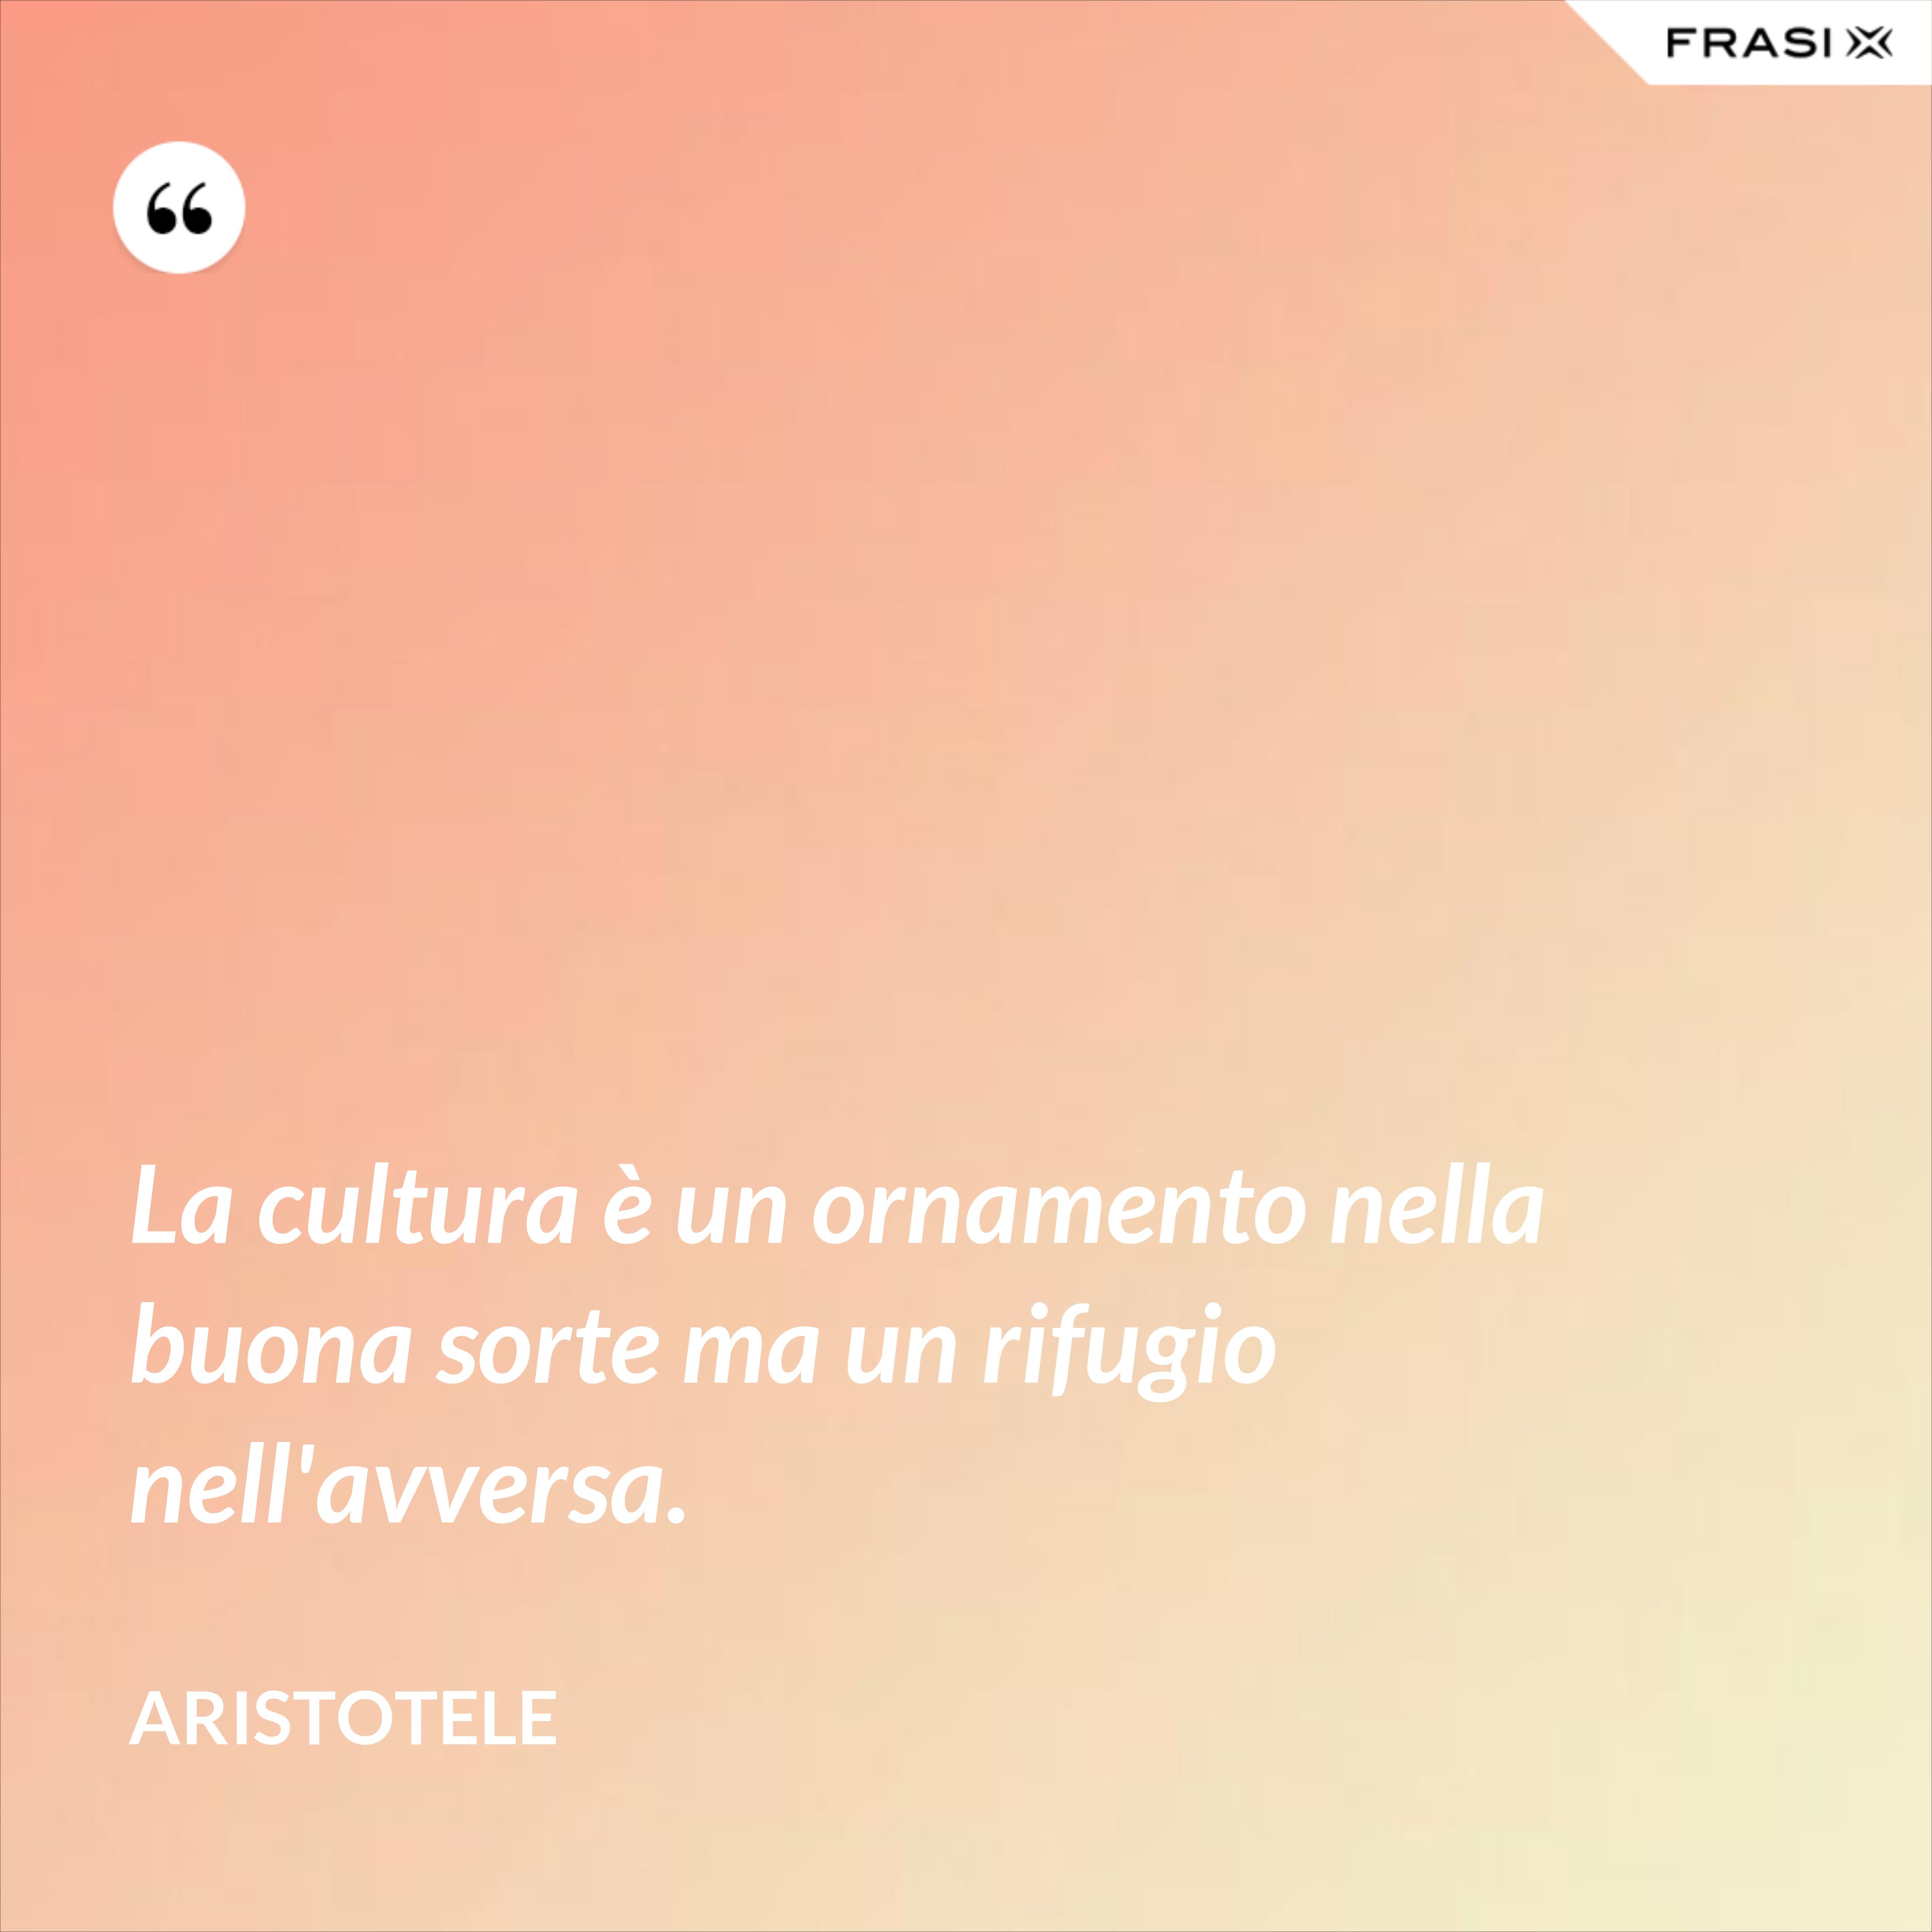 La cultura è un ornamento nella buona sorte ma un rifugio nell'avversa. - Aristotele